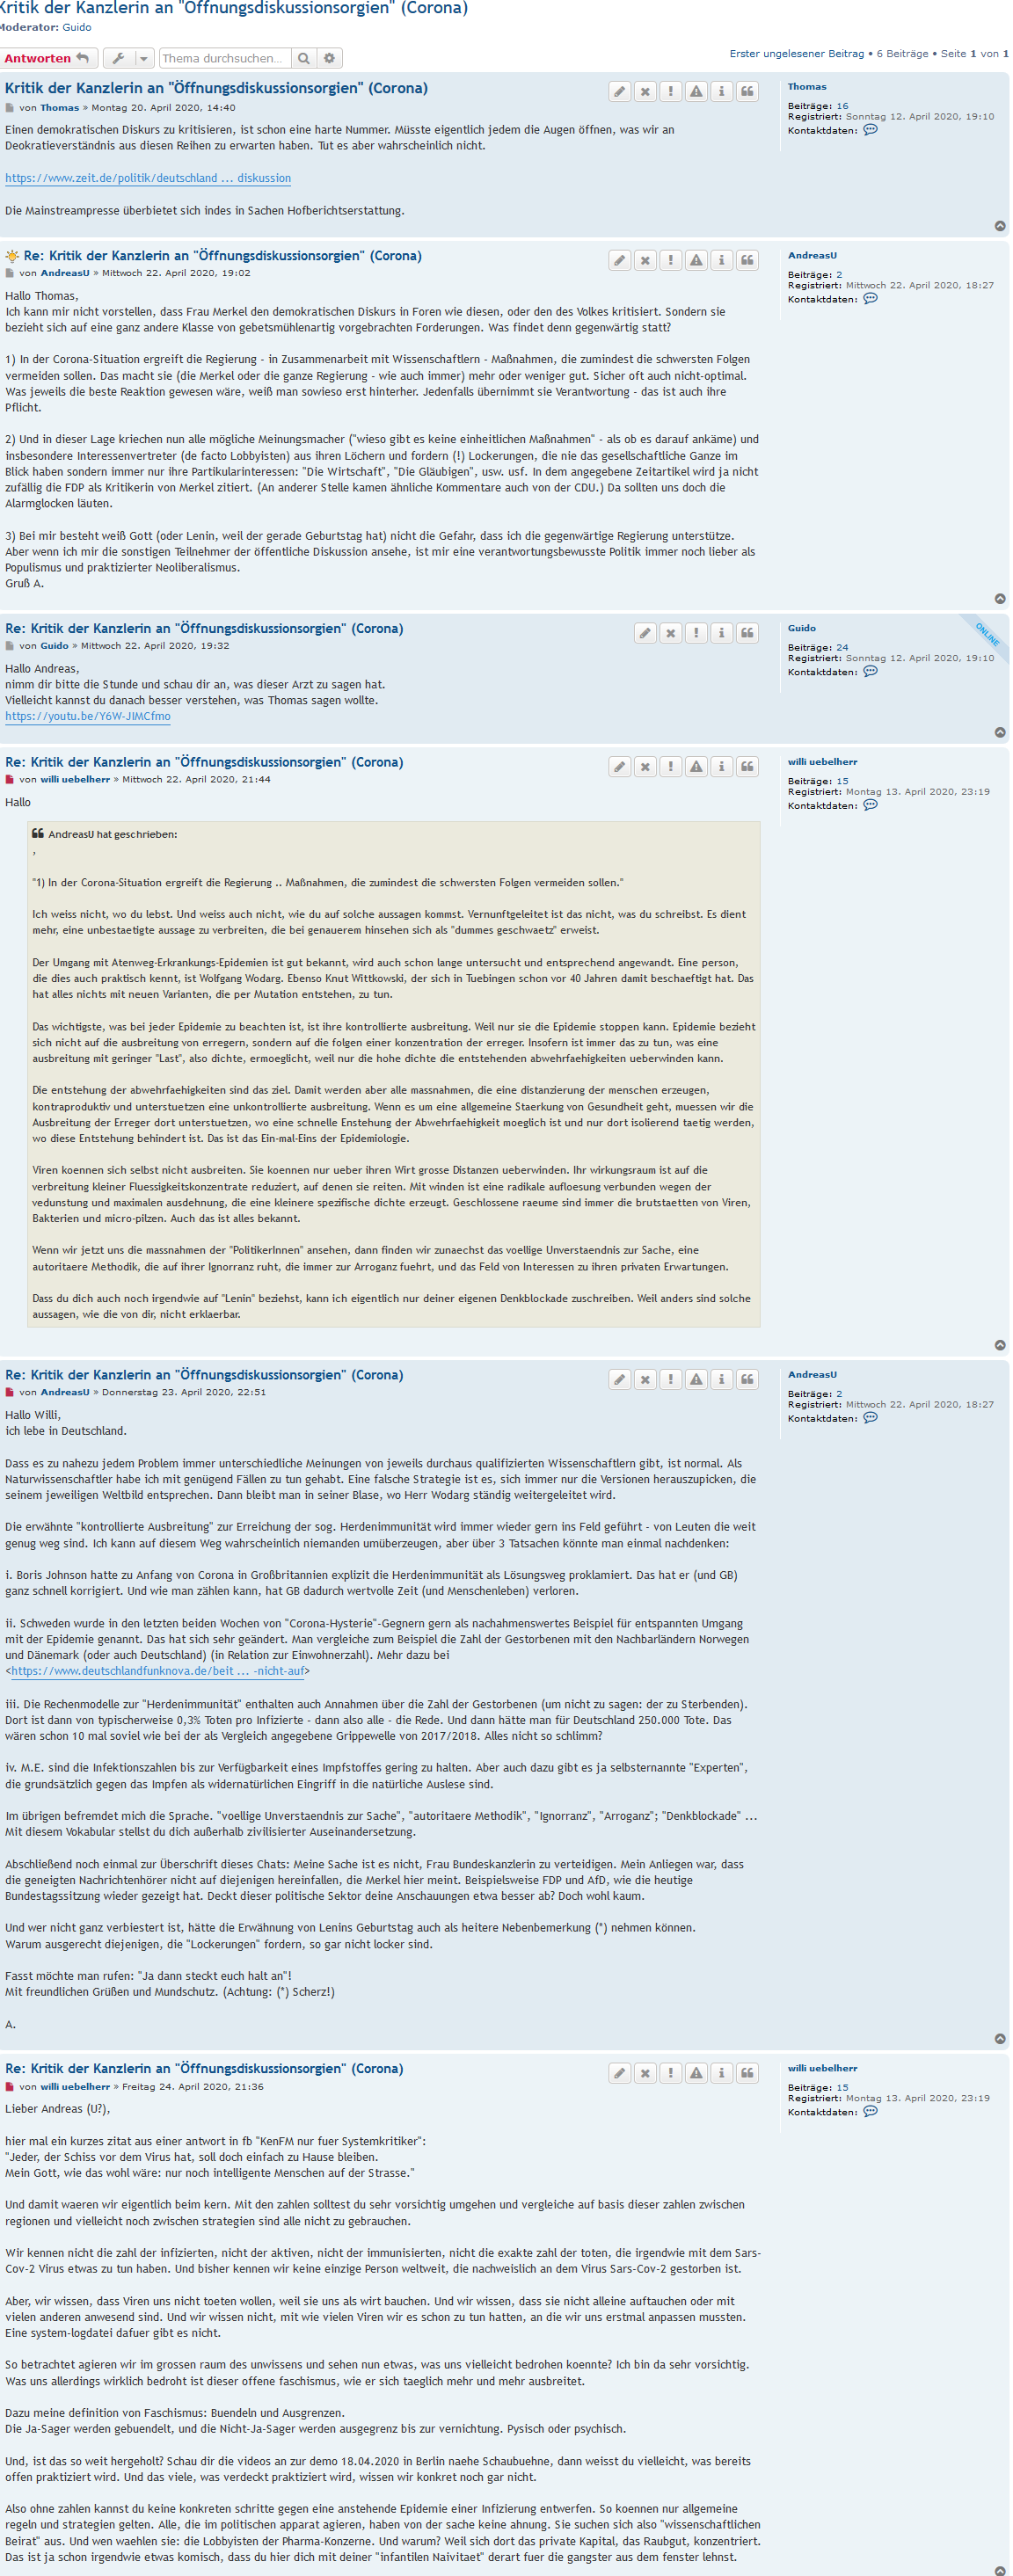 Screenshot_2020-04-25 Kritik der Kanzlerin an Öffnungsdiskussionsorgien (Corona) - DebattenRaum.png